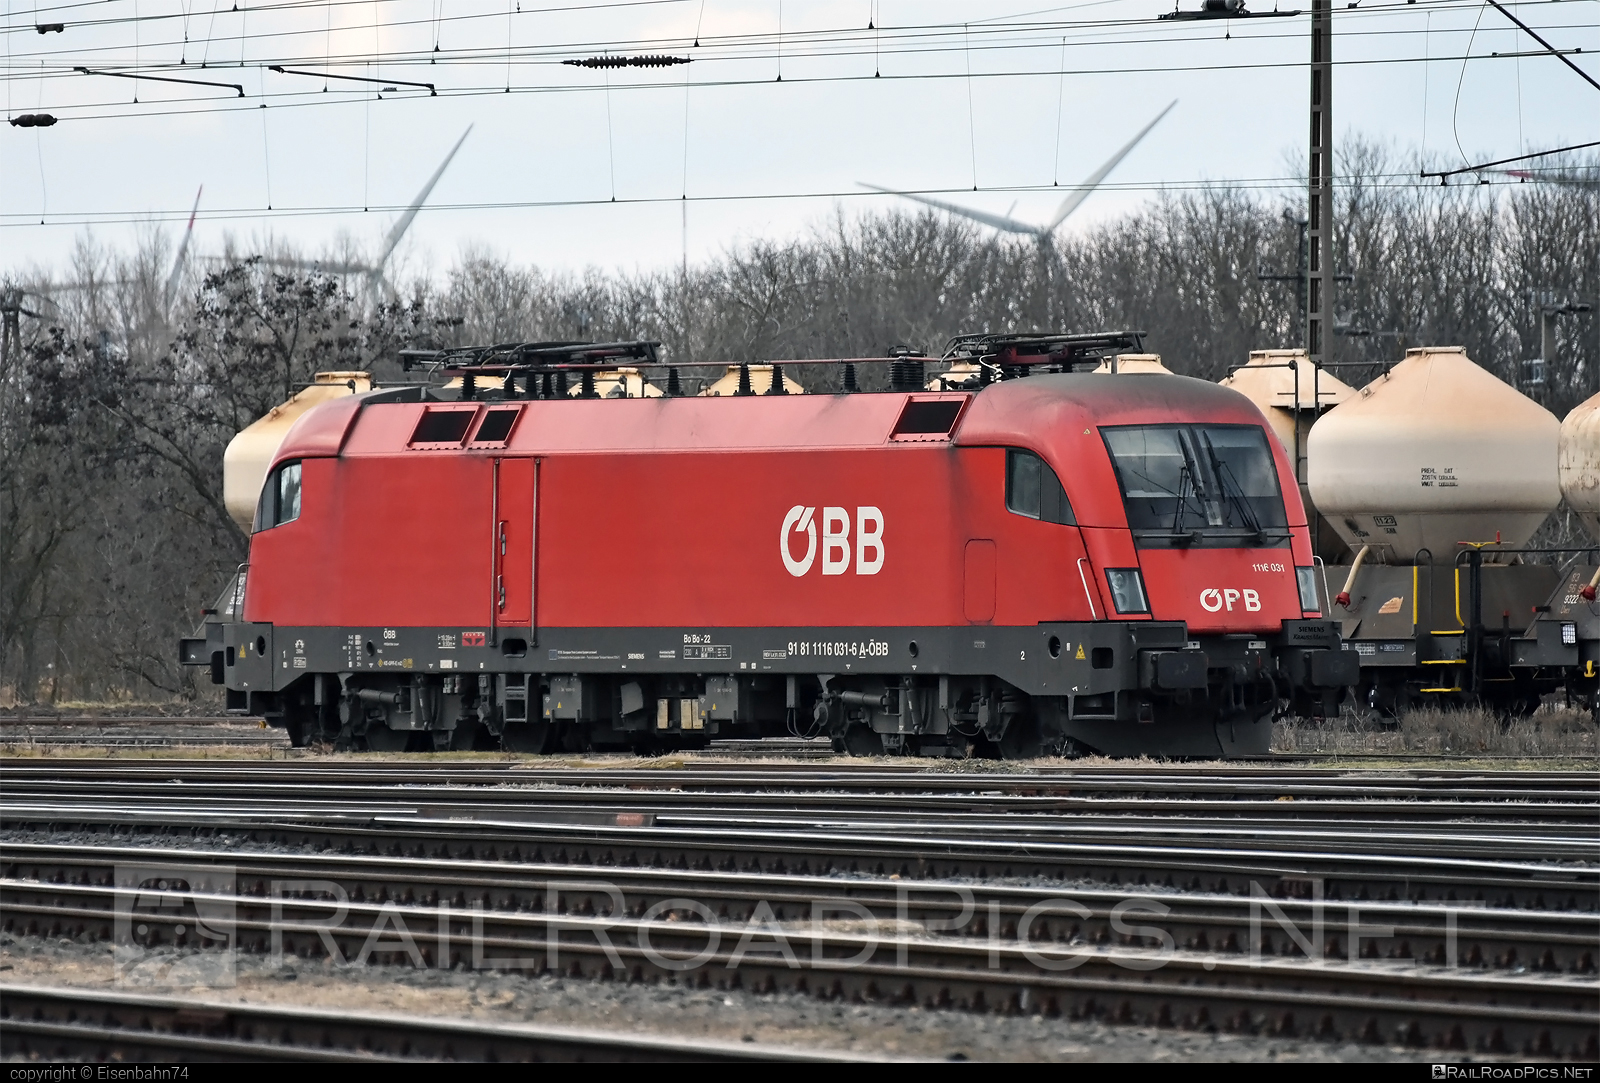 Siemens ES 64 U2 - 1116 031 operated by Rail Cargo Austria AG #es64 #es64u2 #eurosprinter #obb #osterreichischebundesbahnen #siemens #siemensEs64 #siemensEs64u2 #siemenstaurus #taurus #tauruslocomotive